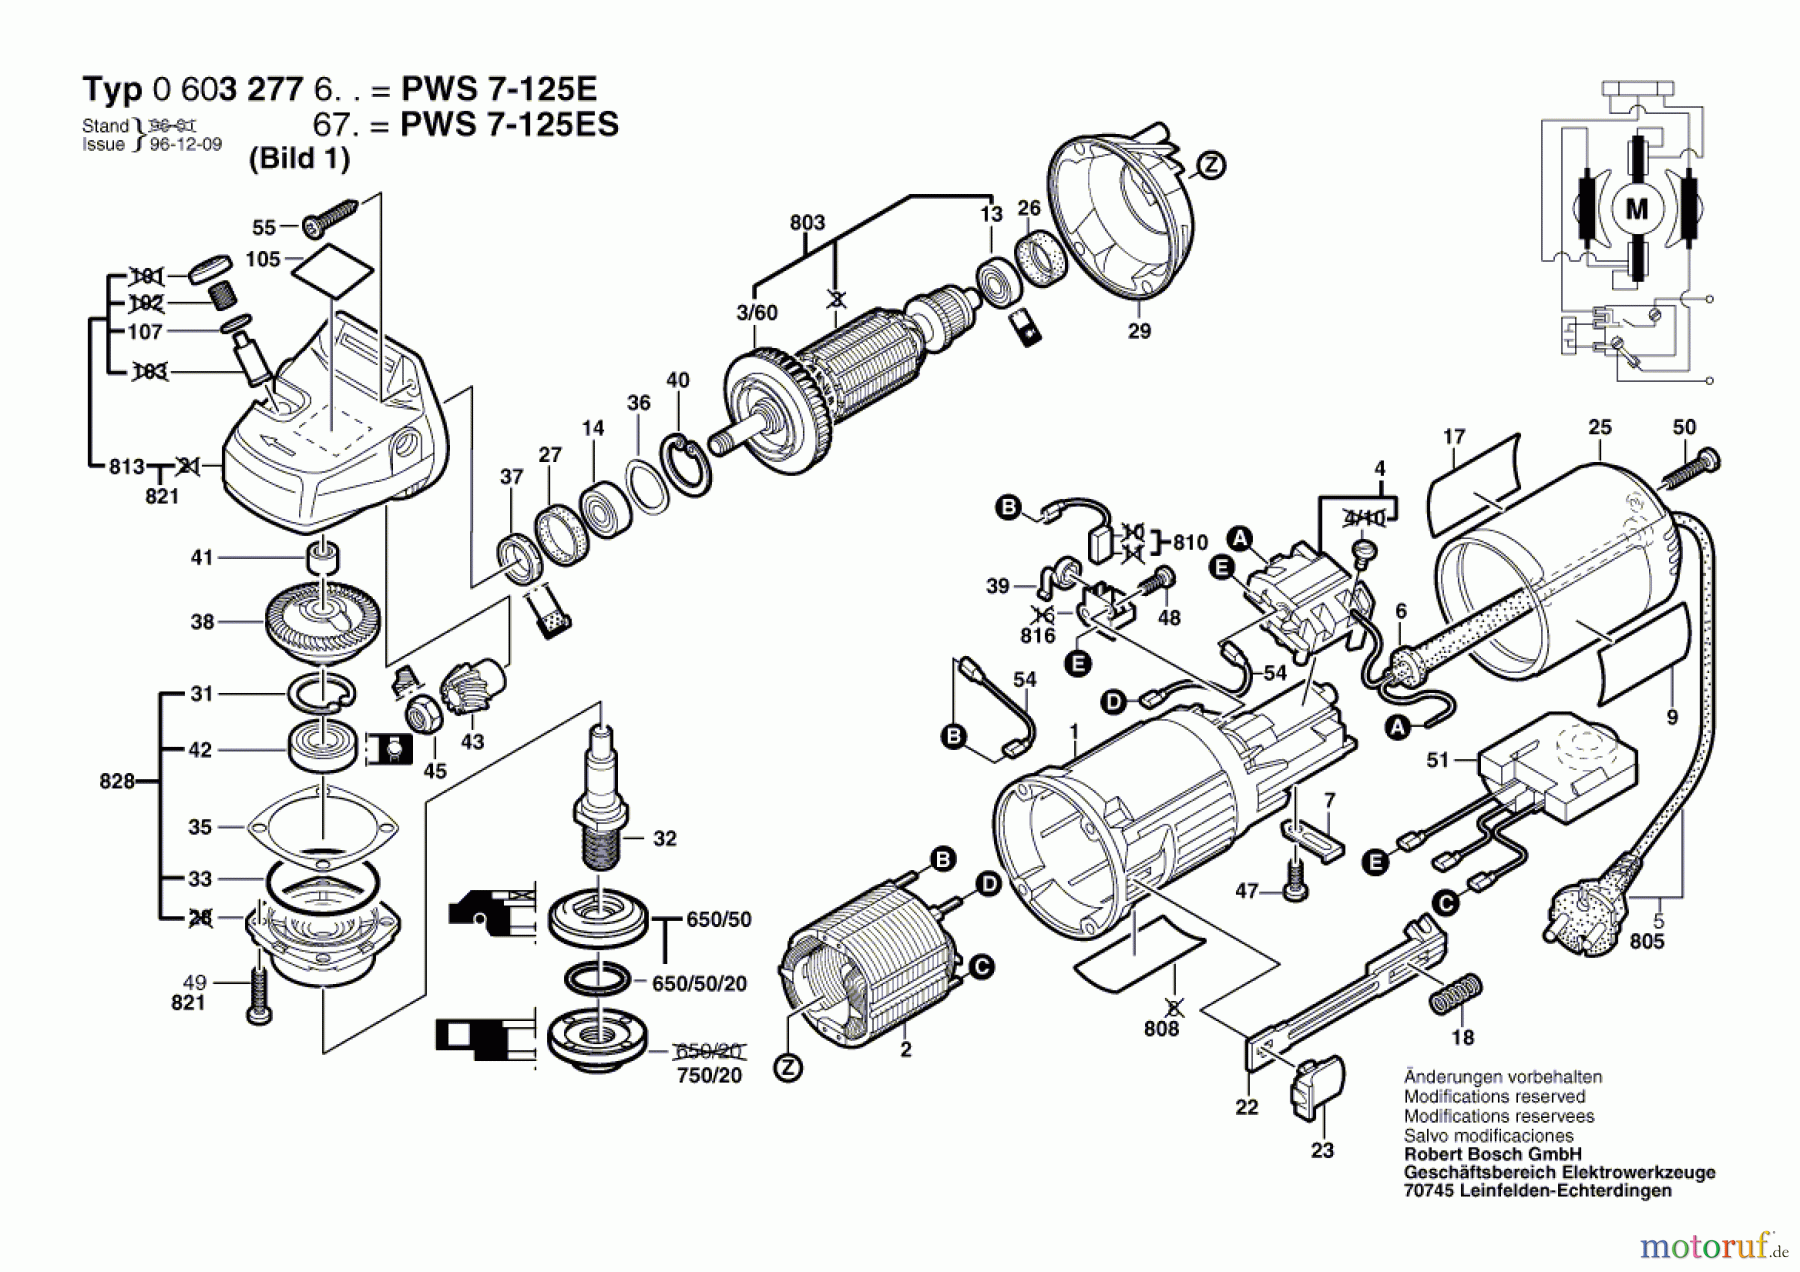  Bosch Werkzeug Winkelschleifer PWS 7-125 E Seite 1